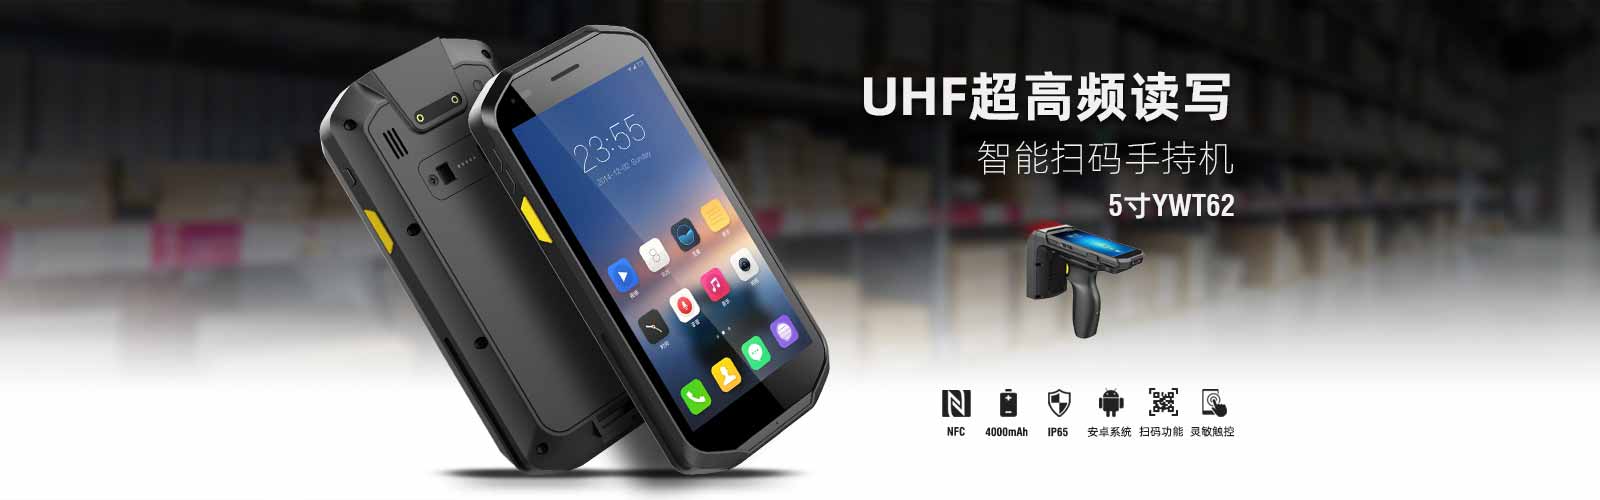 UHF超高频PDA，智能扫码手持机，IP65防护，安卓8.1系统，自带NFC